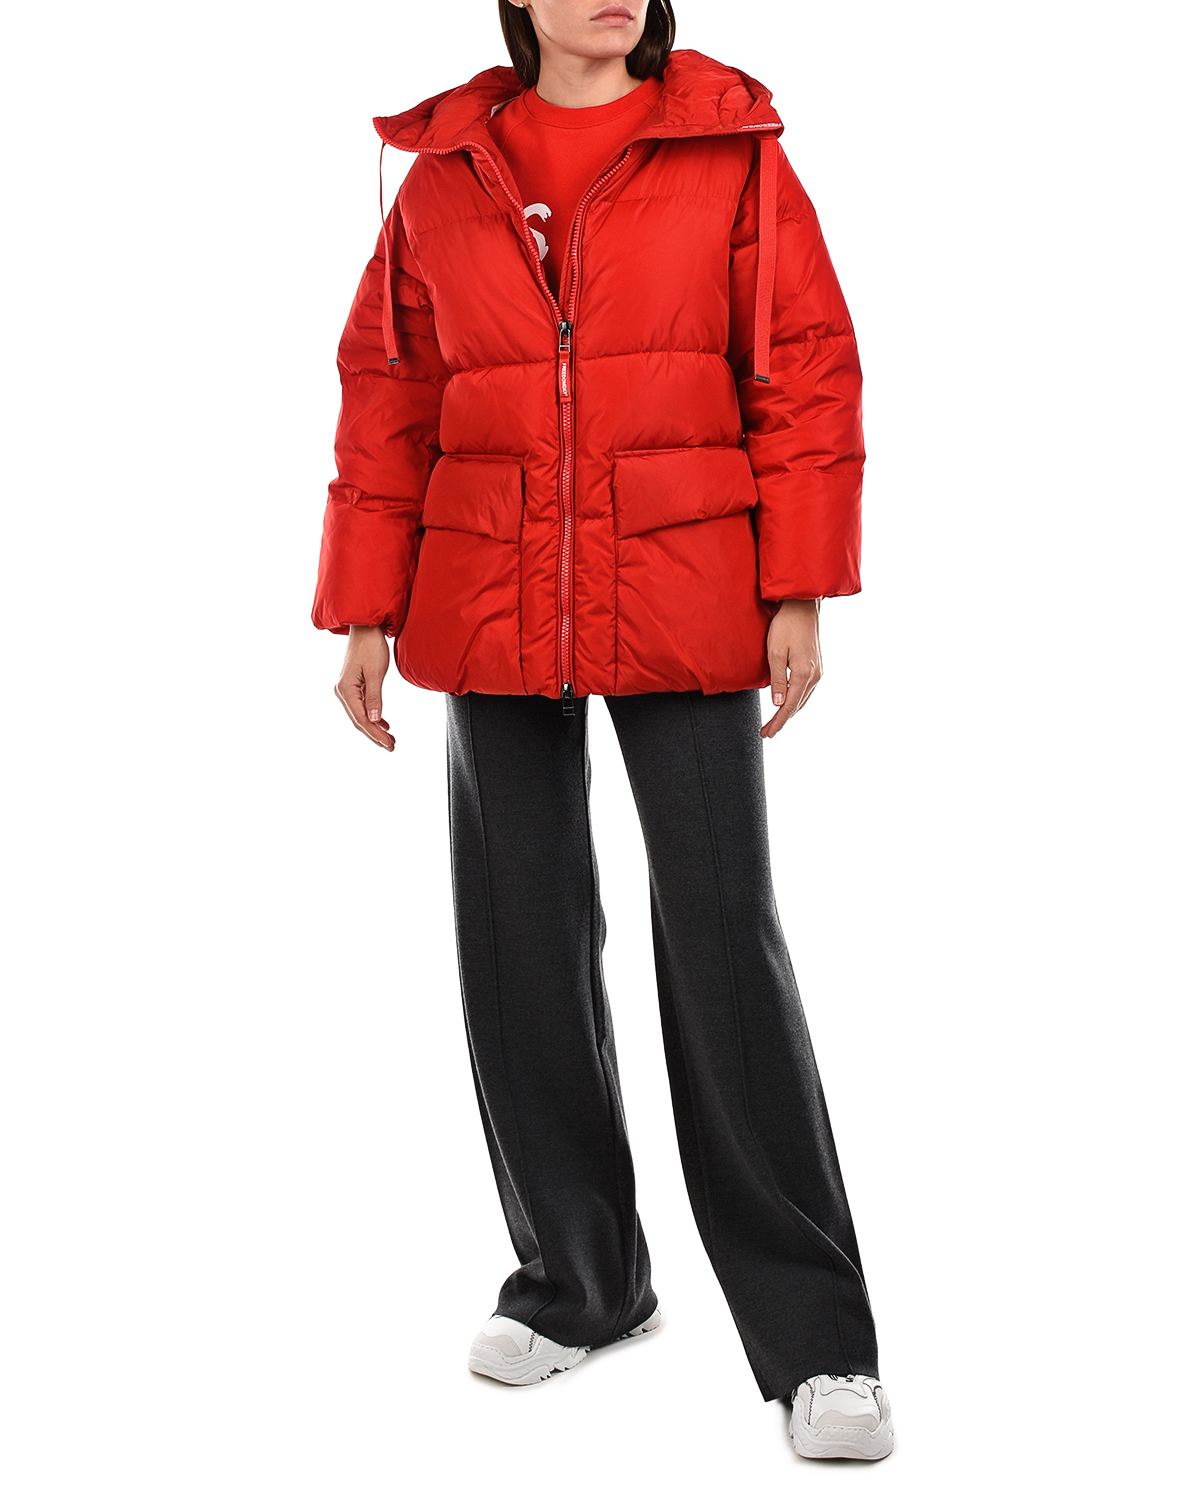 Красная куртка с контрастной подкладкой Freedomday, размер 38, цвет красный - фото 3